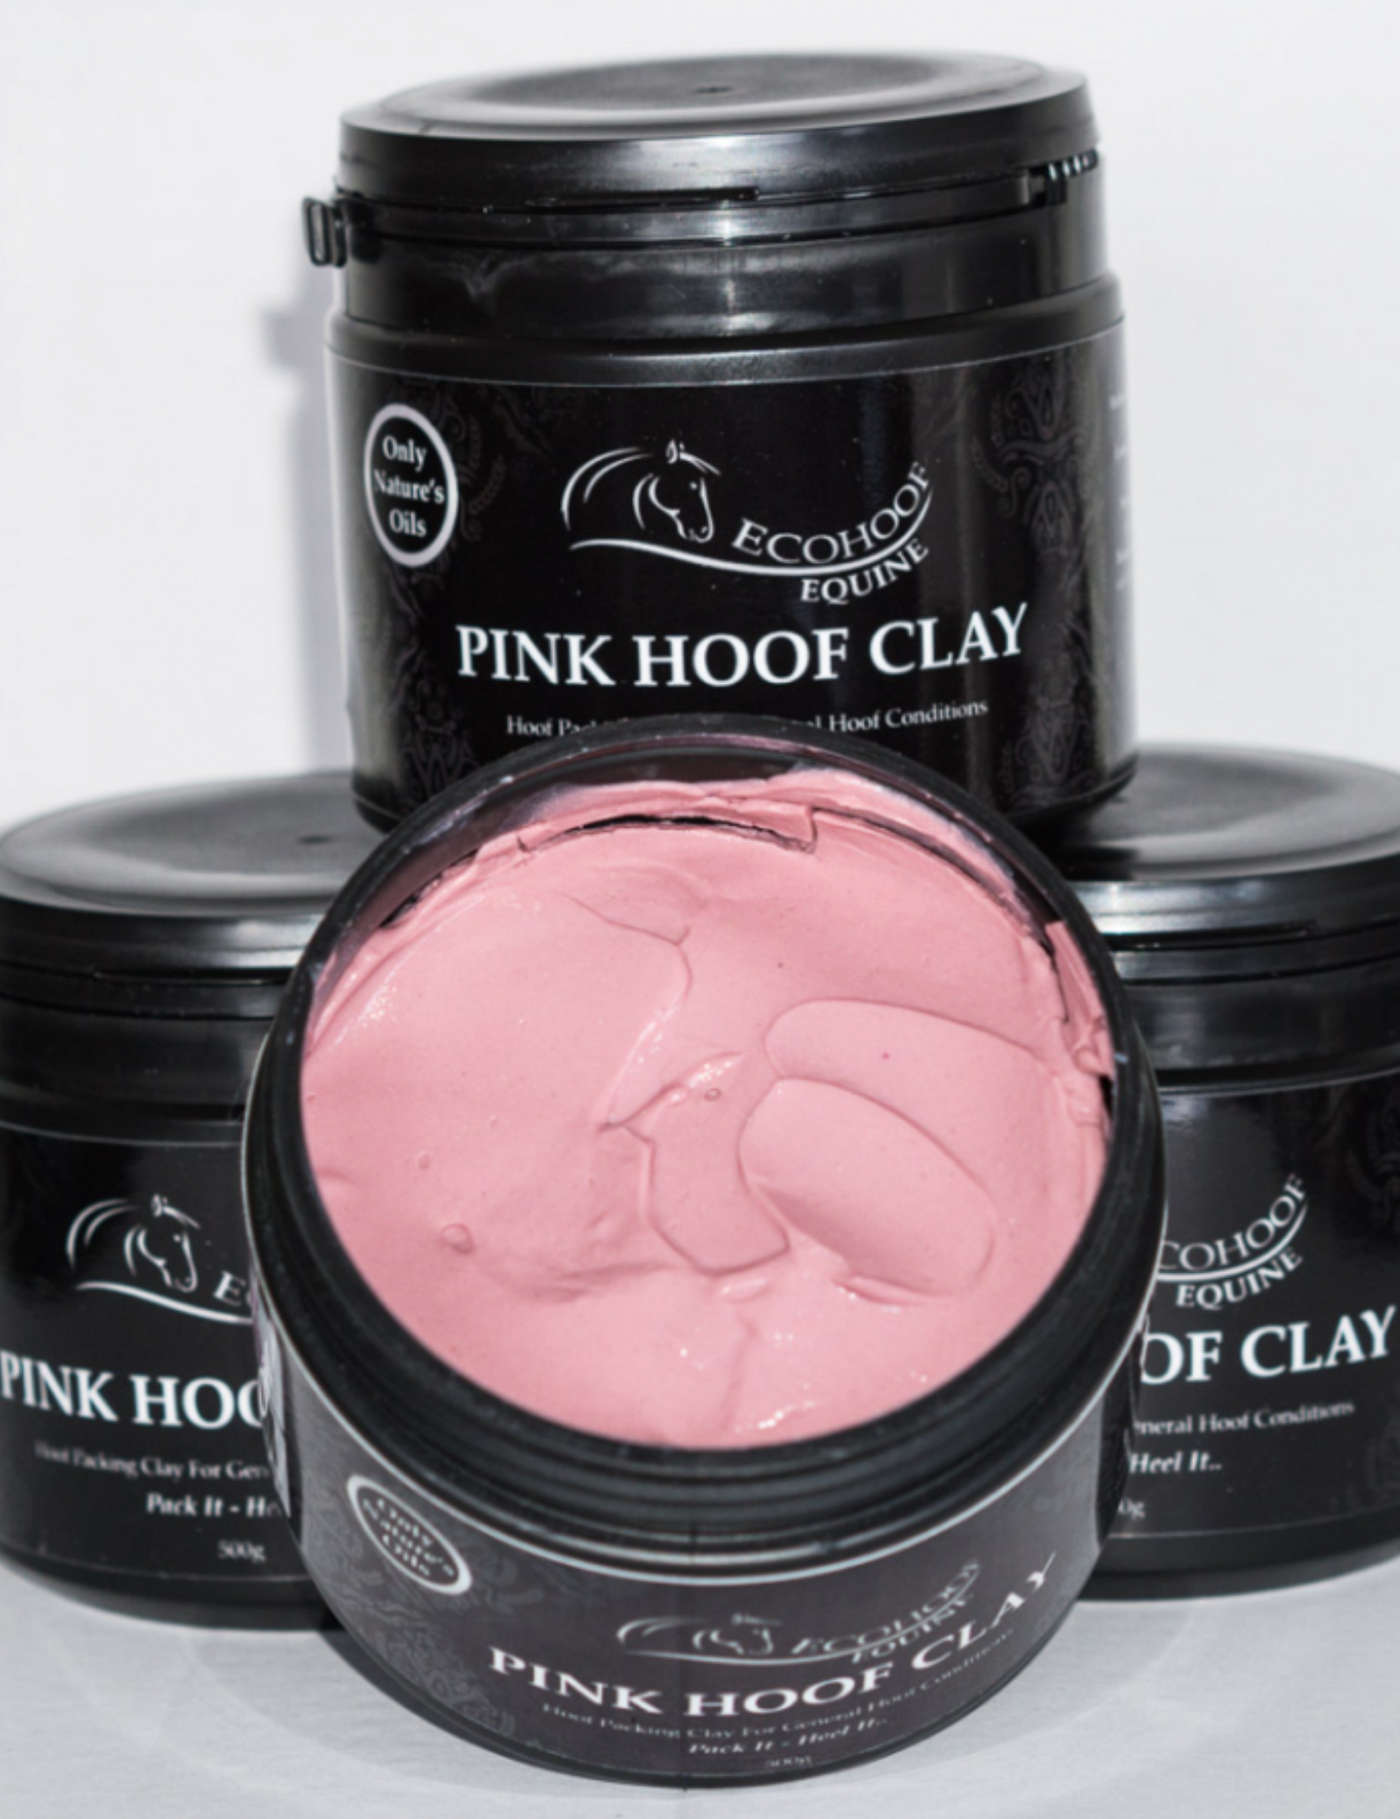 Pink Hoof Clay